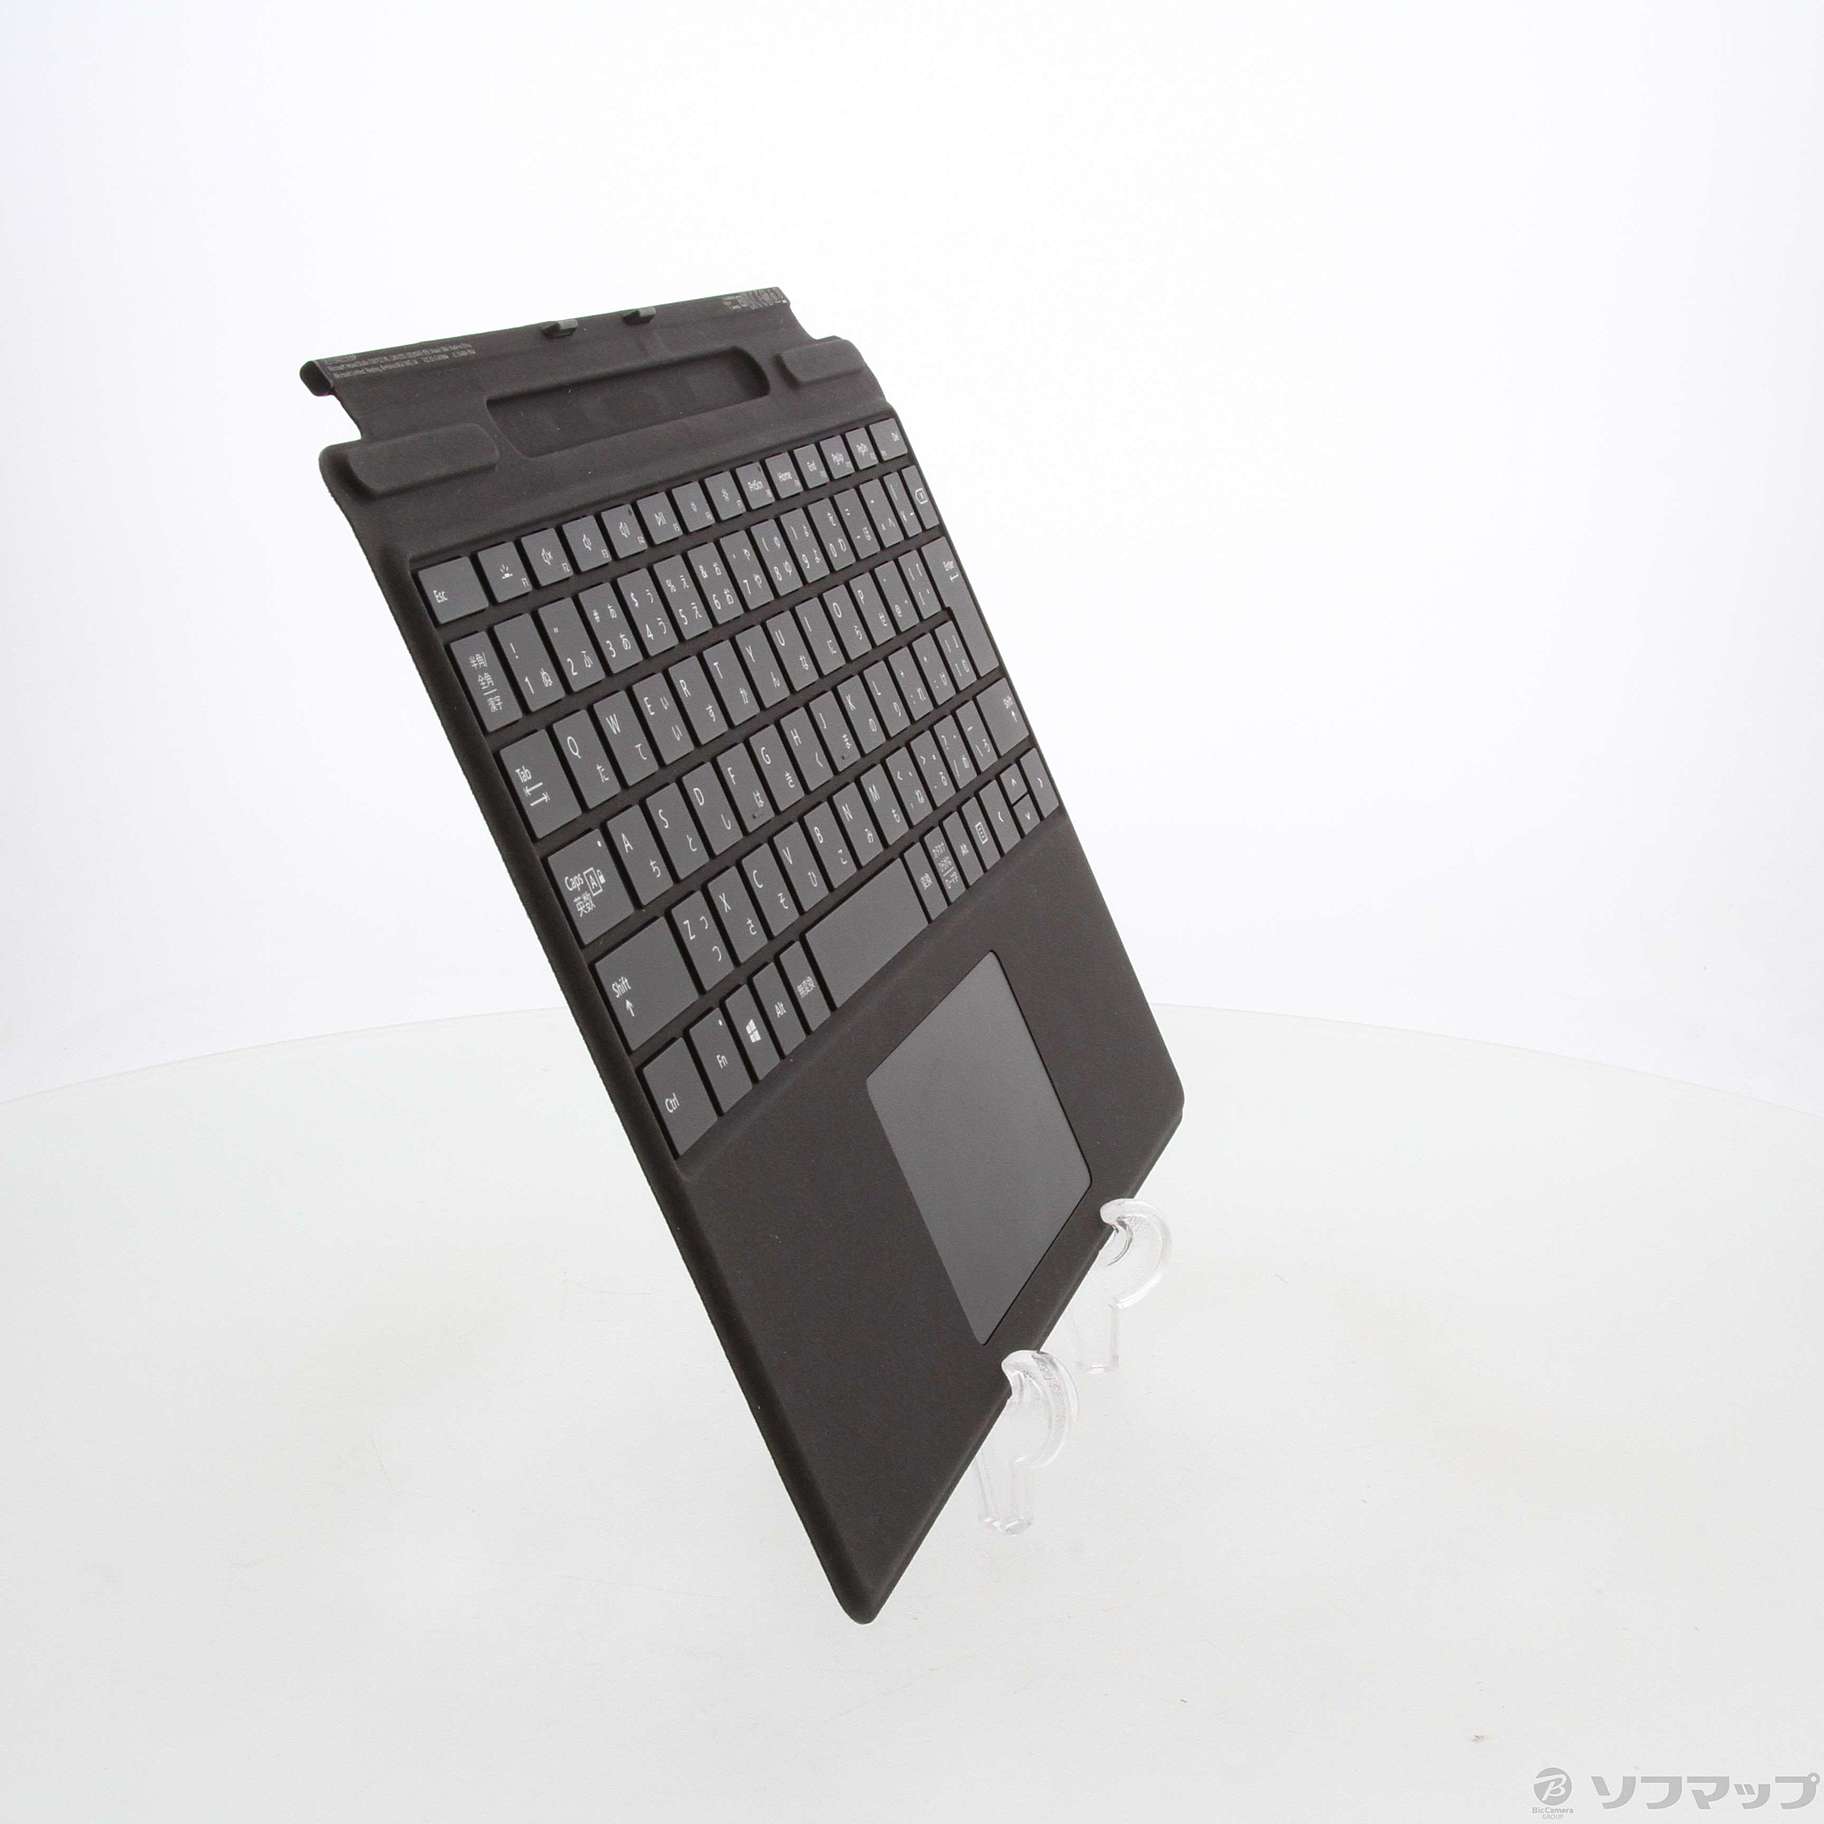 surfacepro スリムペン2付きsignatureキーボード アイスブルー - PC